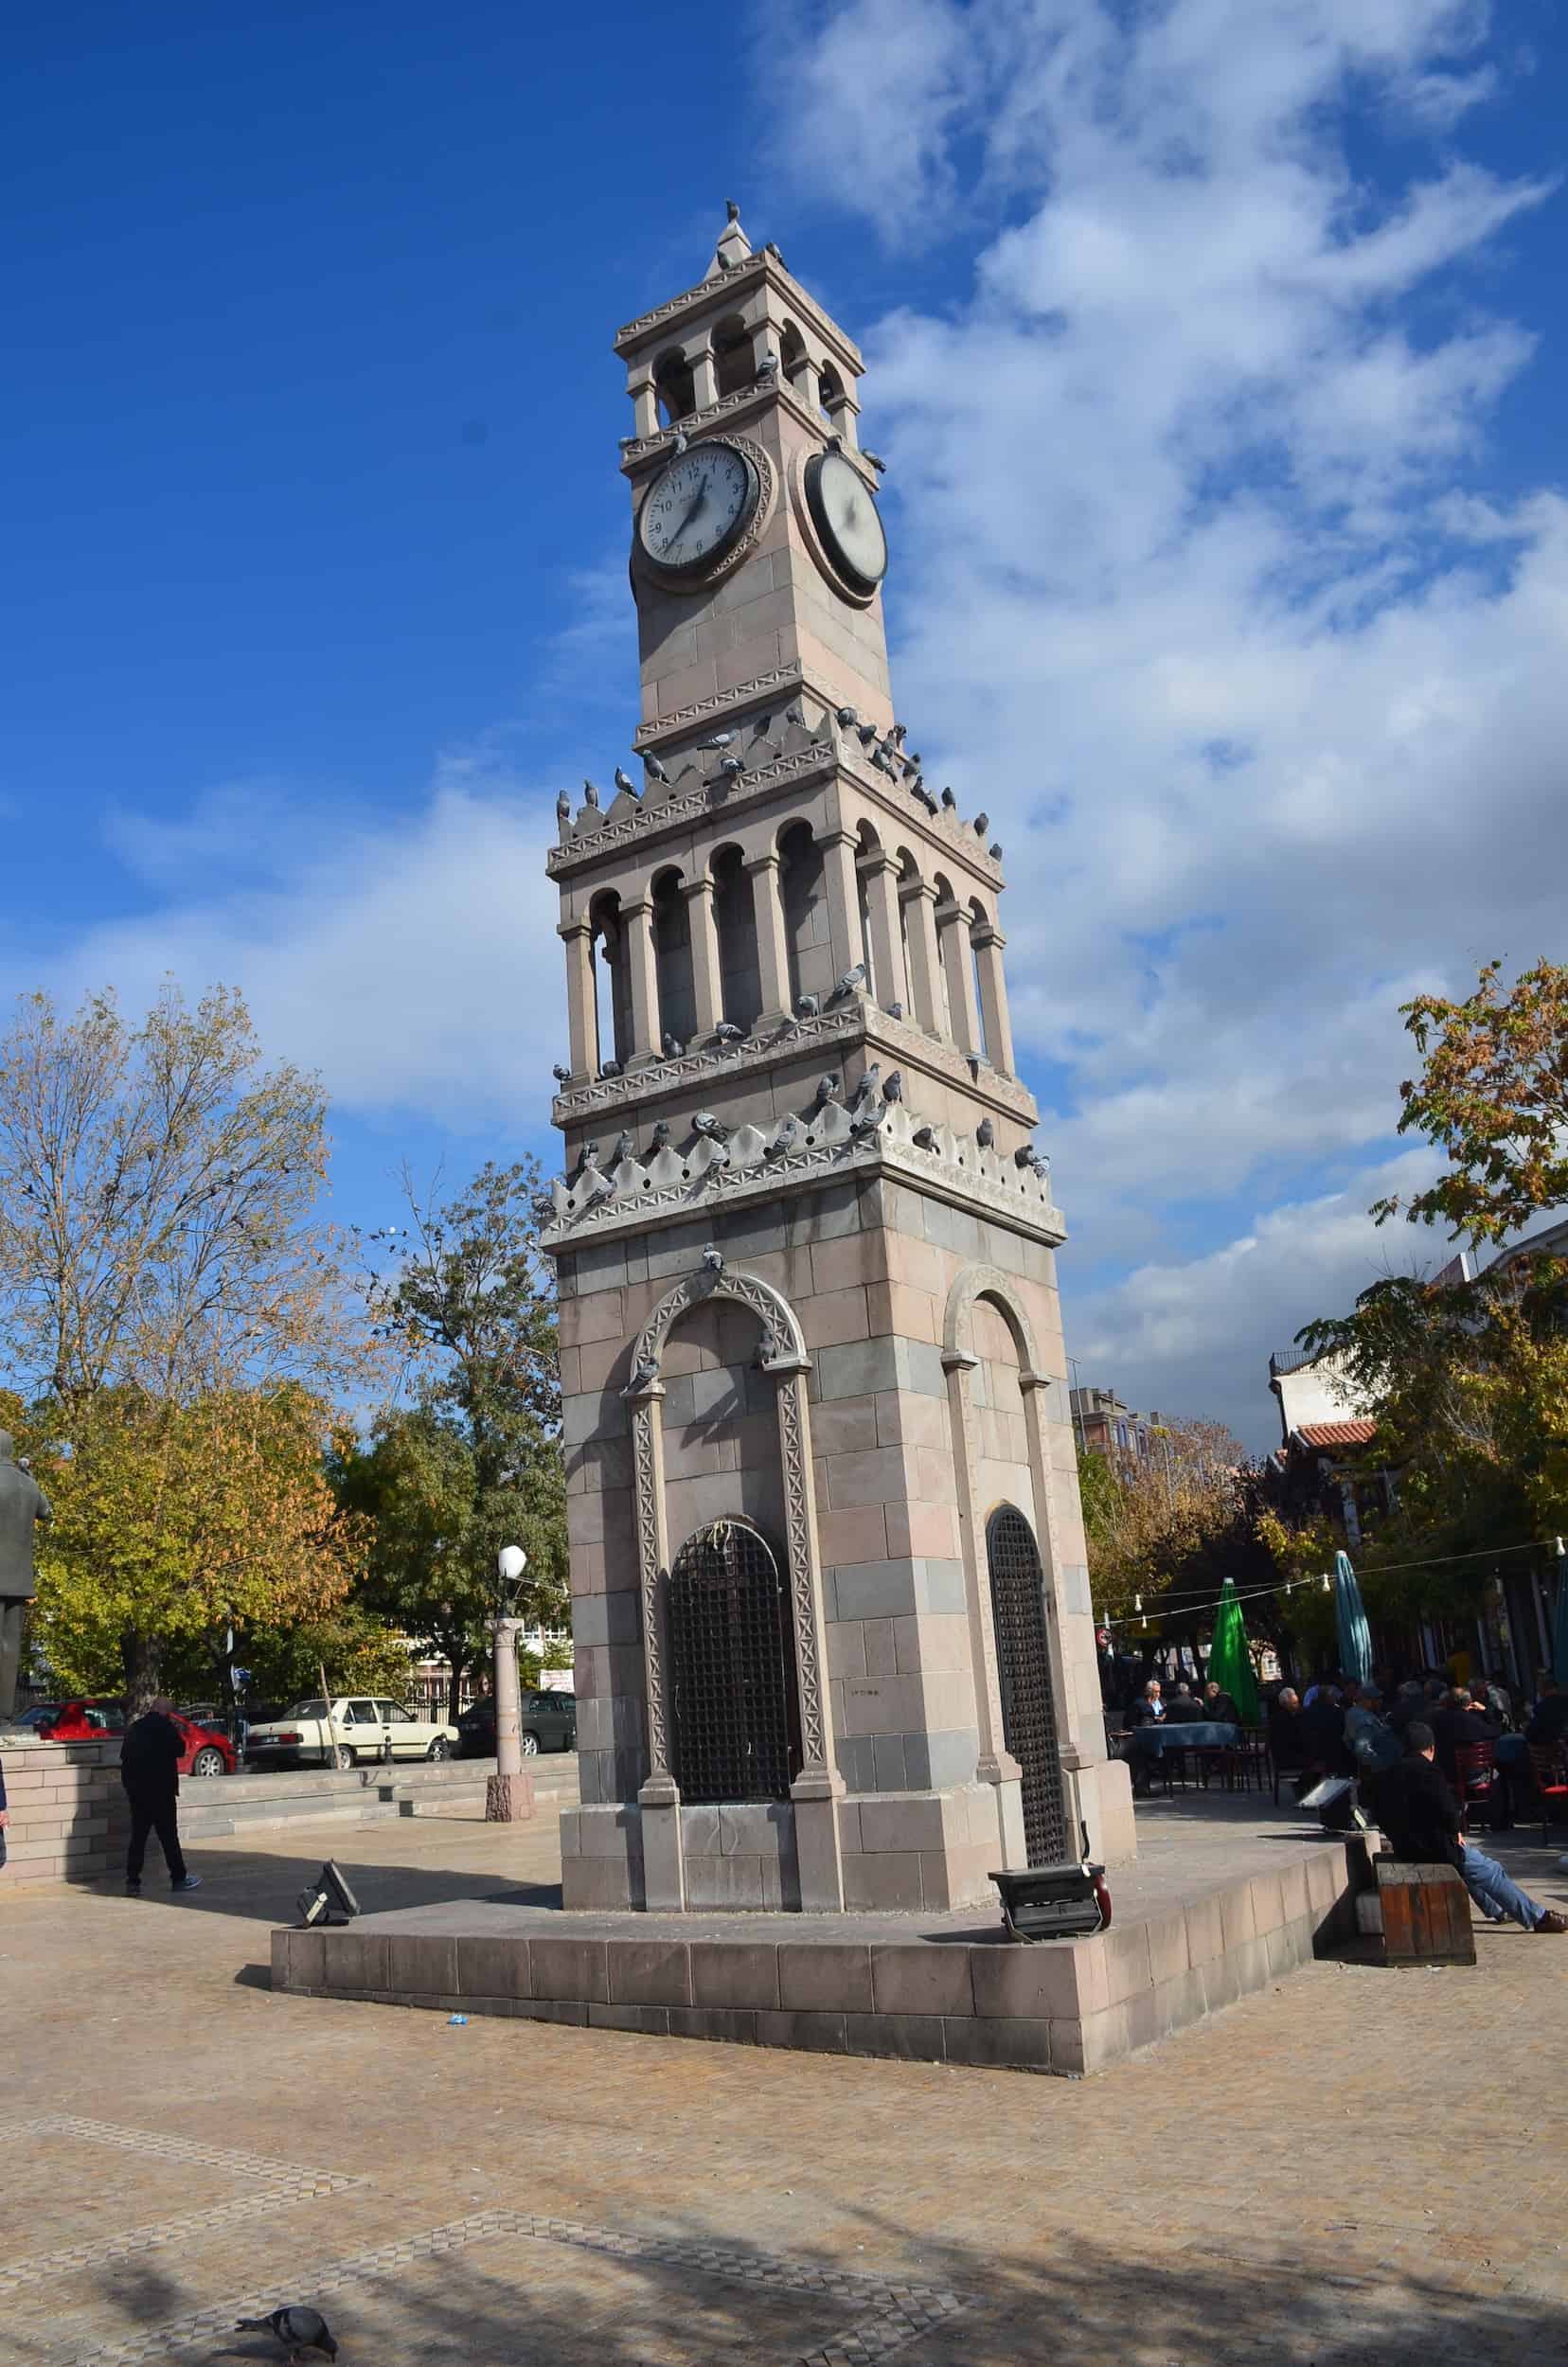 Clock tower in Hamamönü, Ankara, Turkey